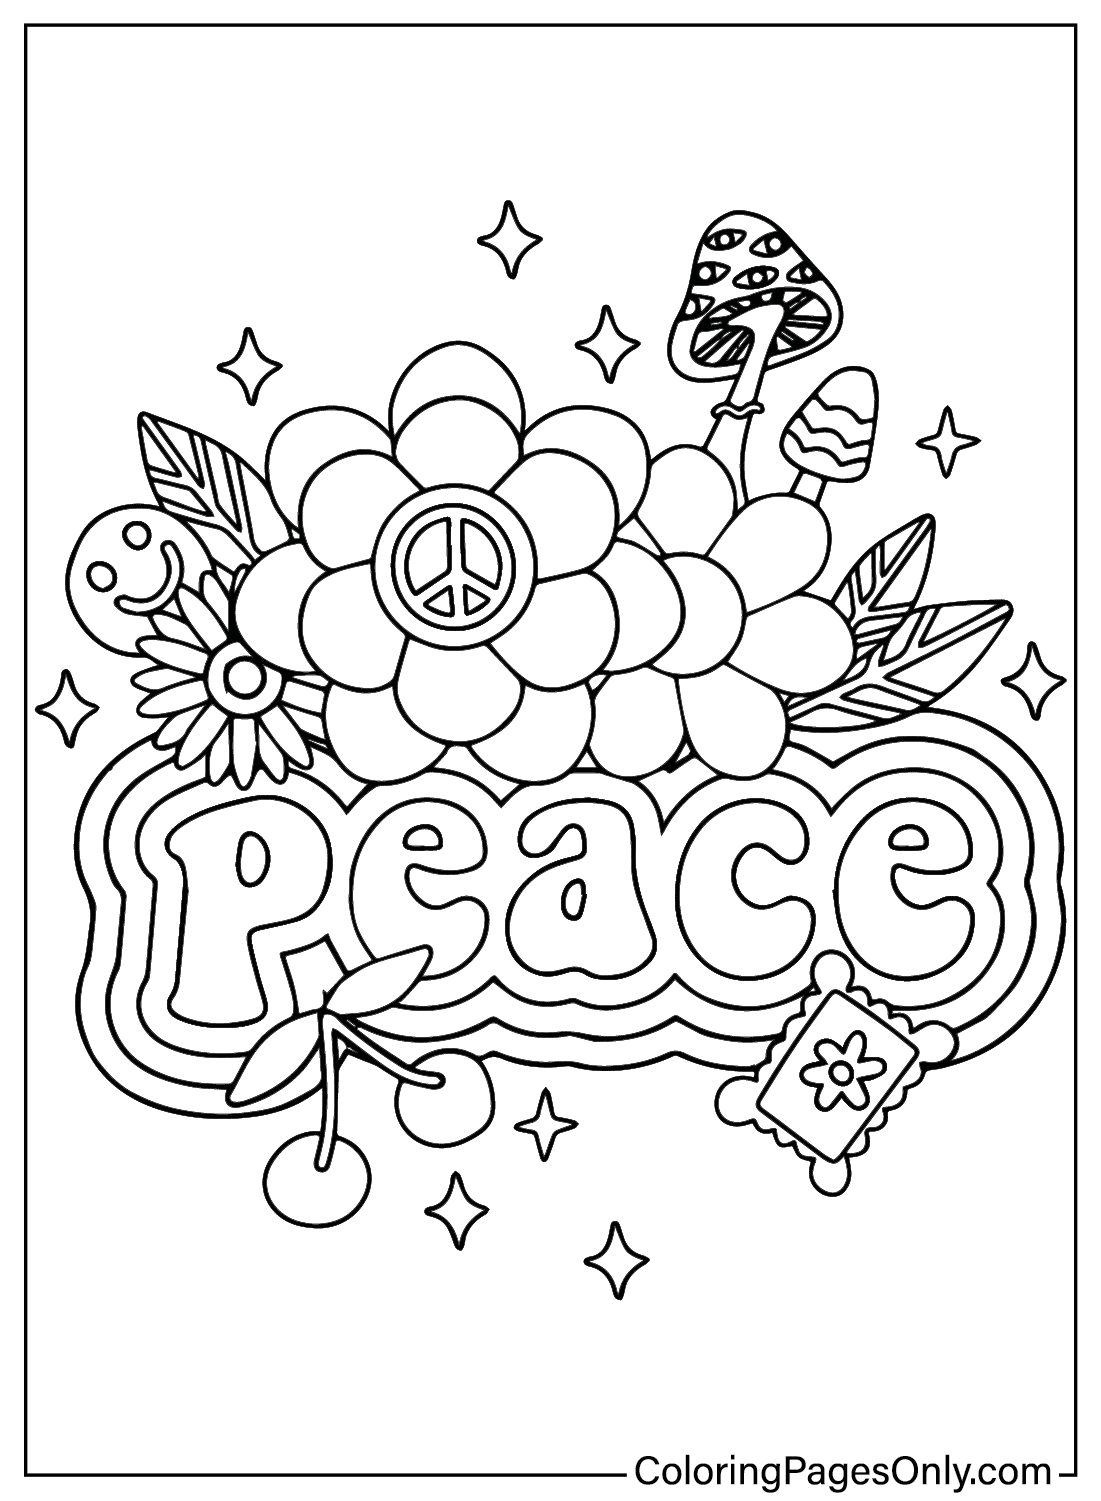 Feuille de coloriage pour la Journée internationale de la paix pour les enfants